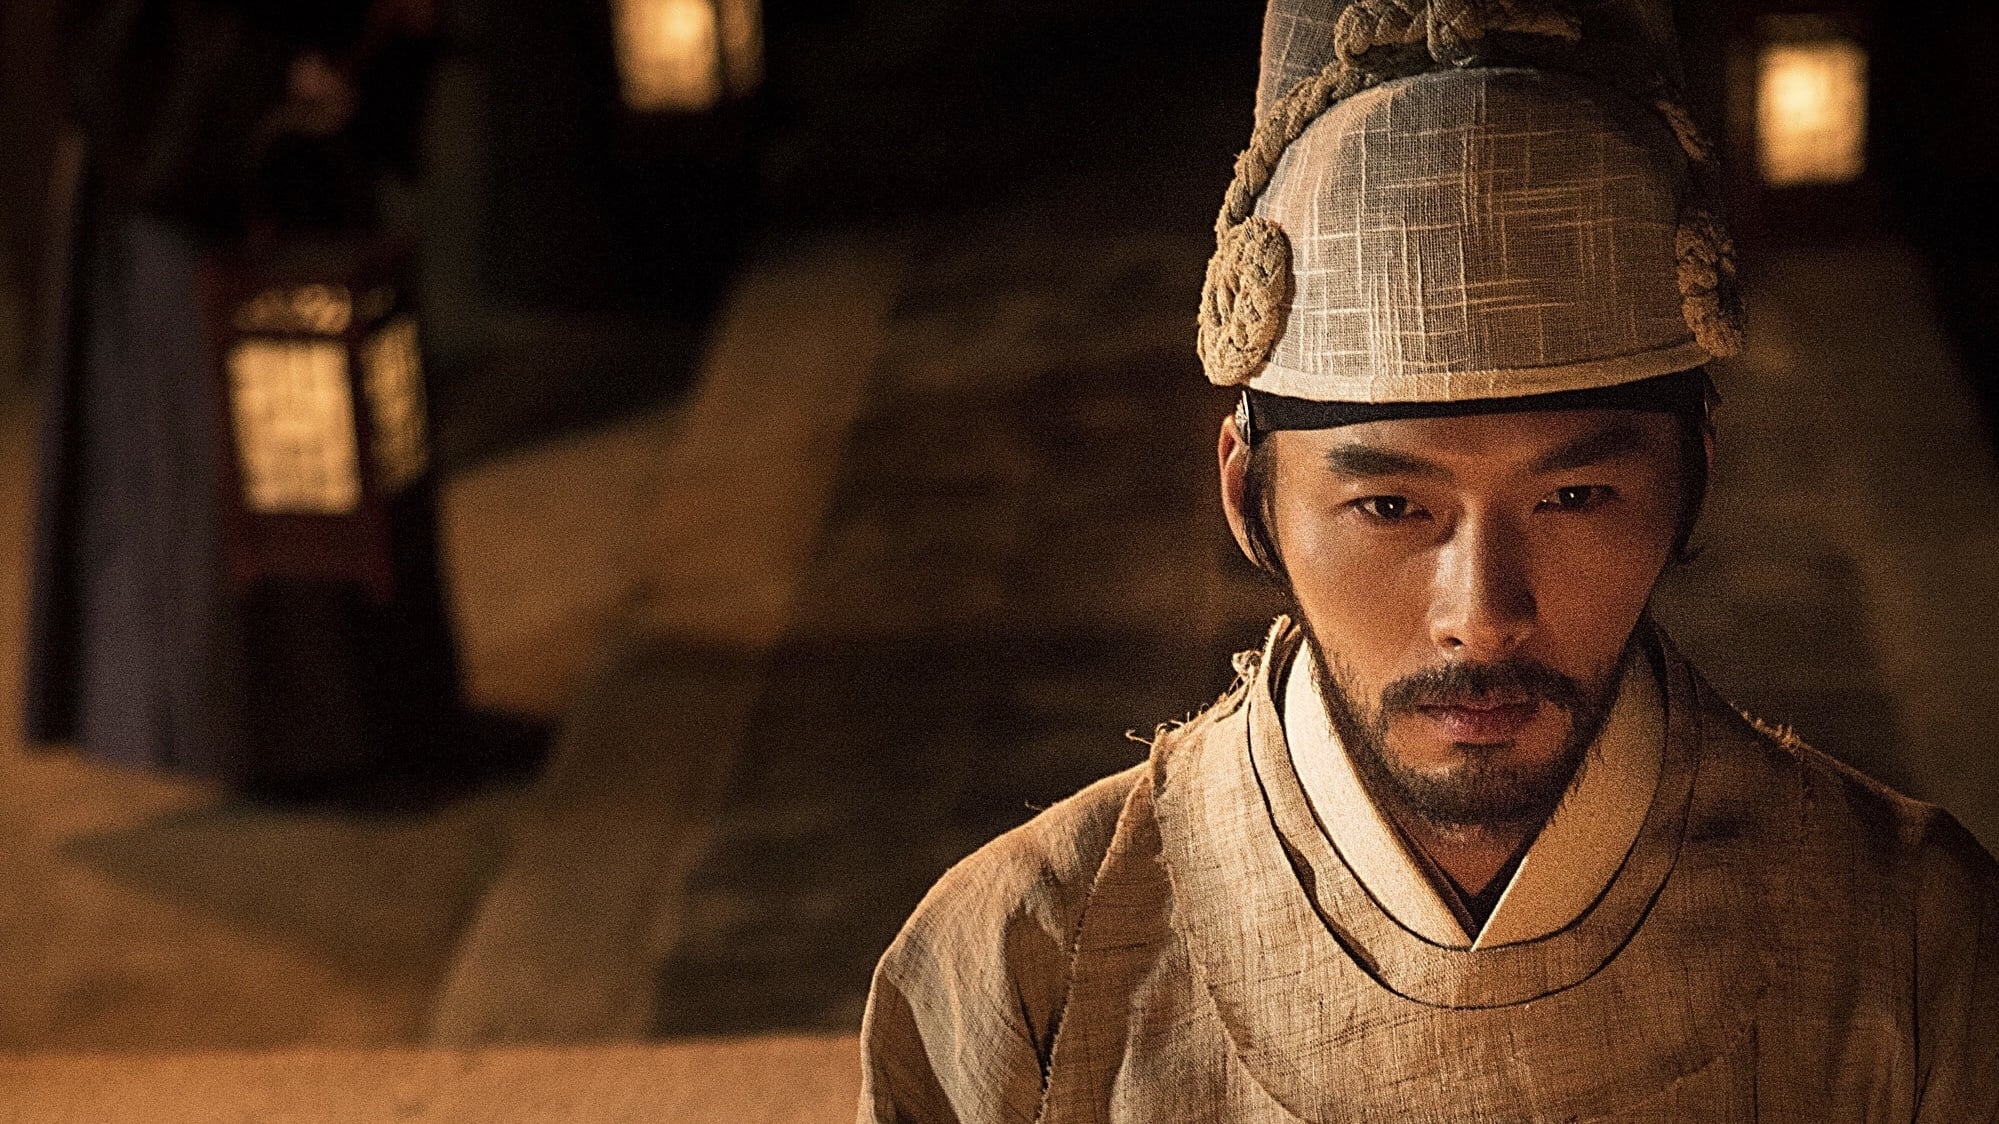 Không nhận ra Hyun Bin với gương mặt râu ria xồm xoàm, tạo hình cổ trang đầy khí chất quân vương - Ảnh 5.